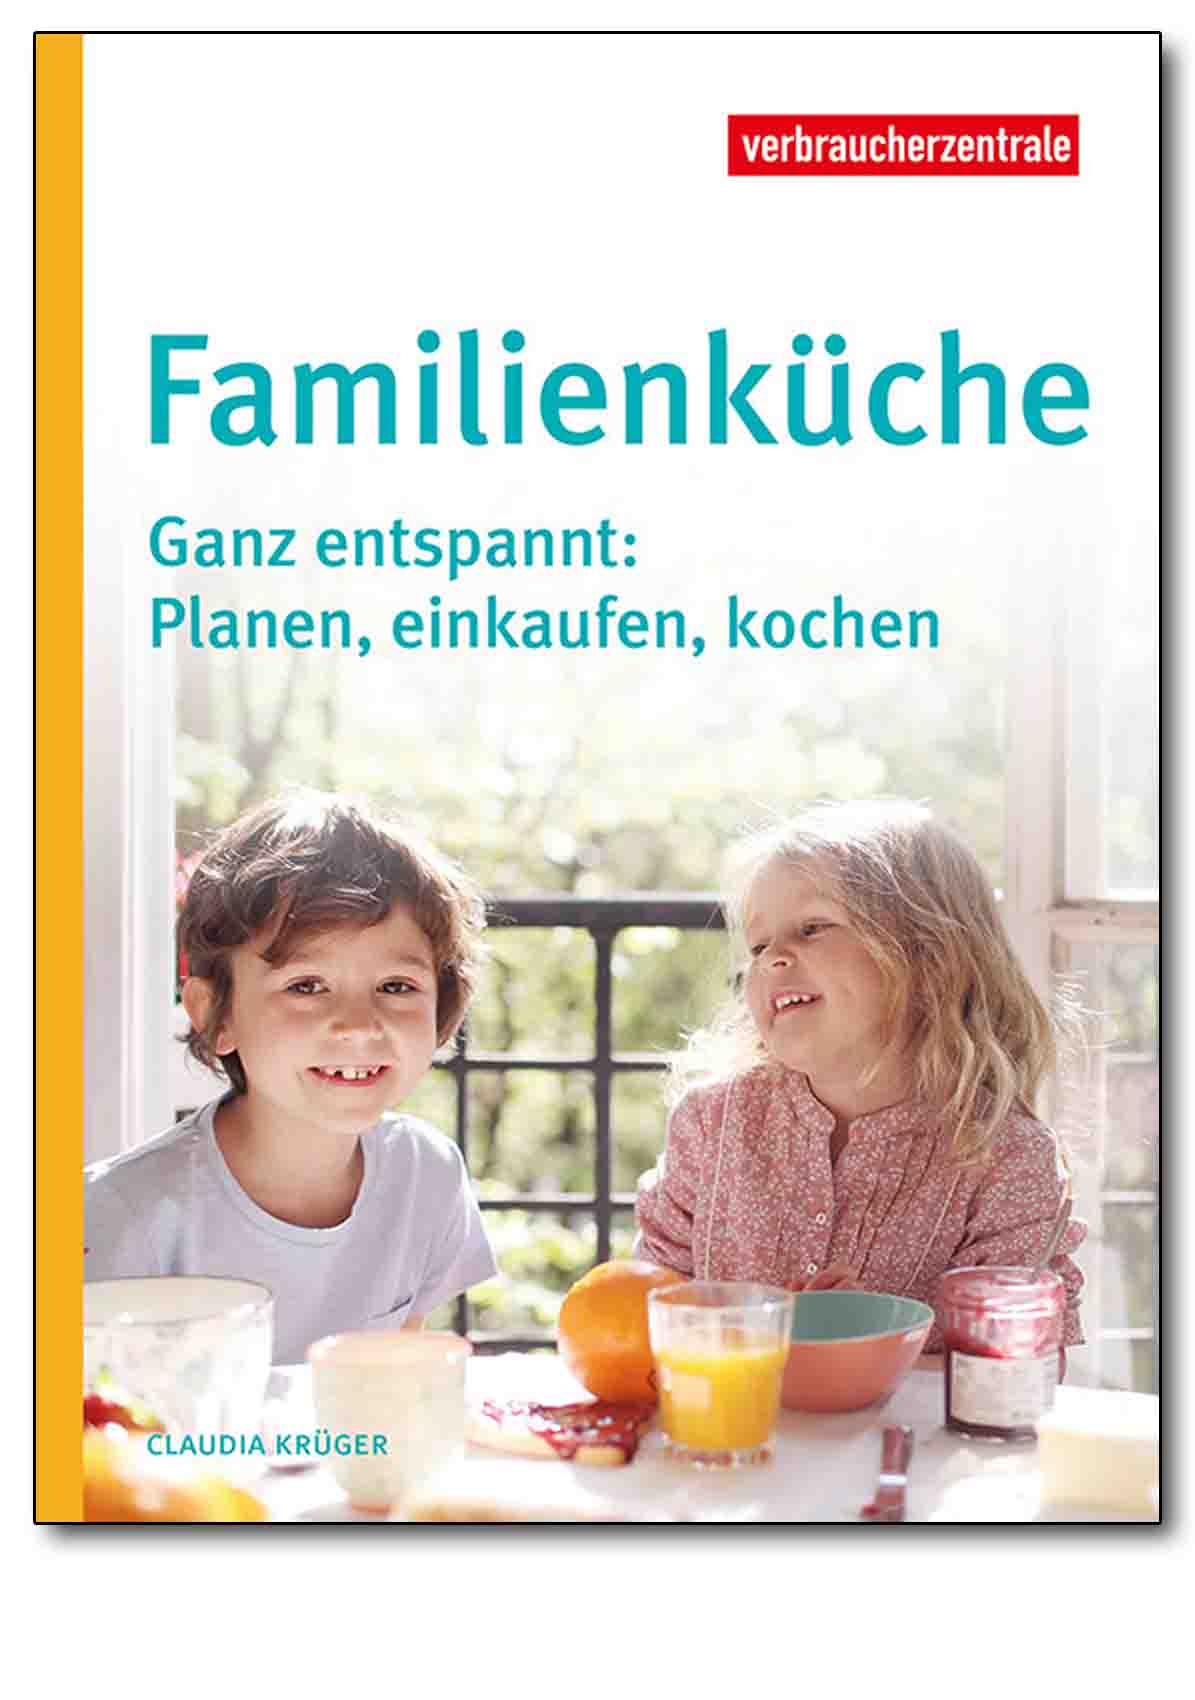 Buch - Familienküche - Verbraucherzentrale